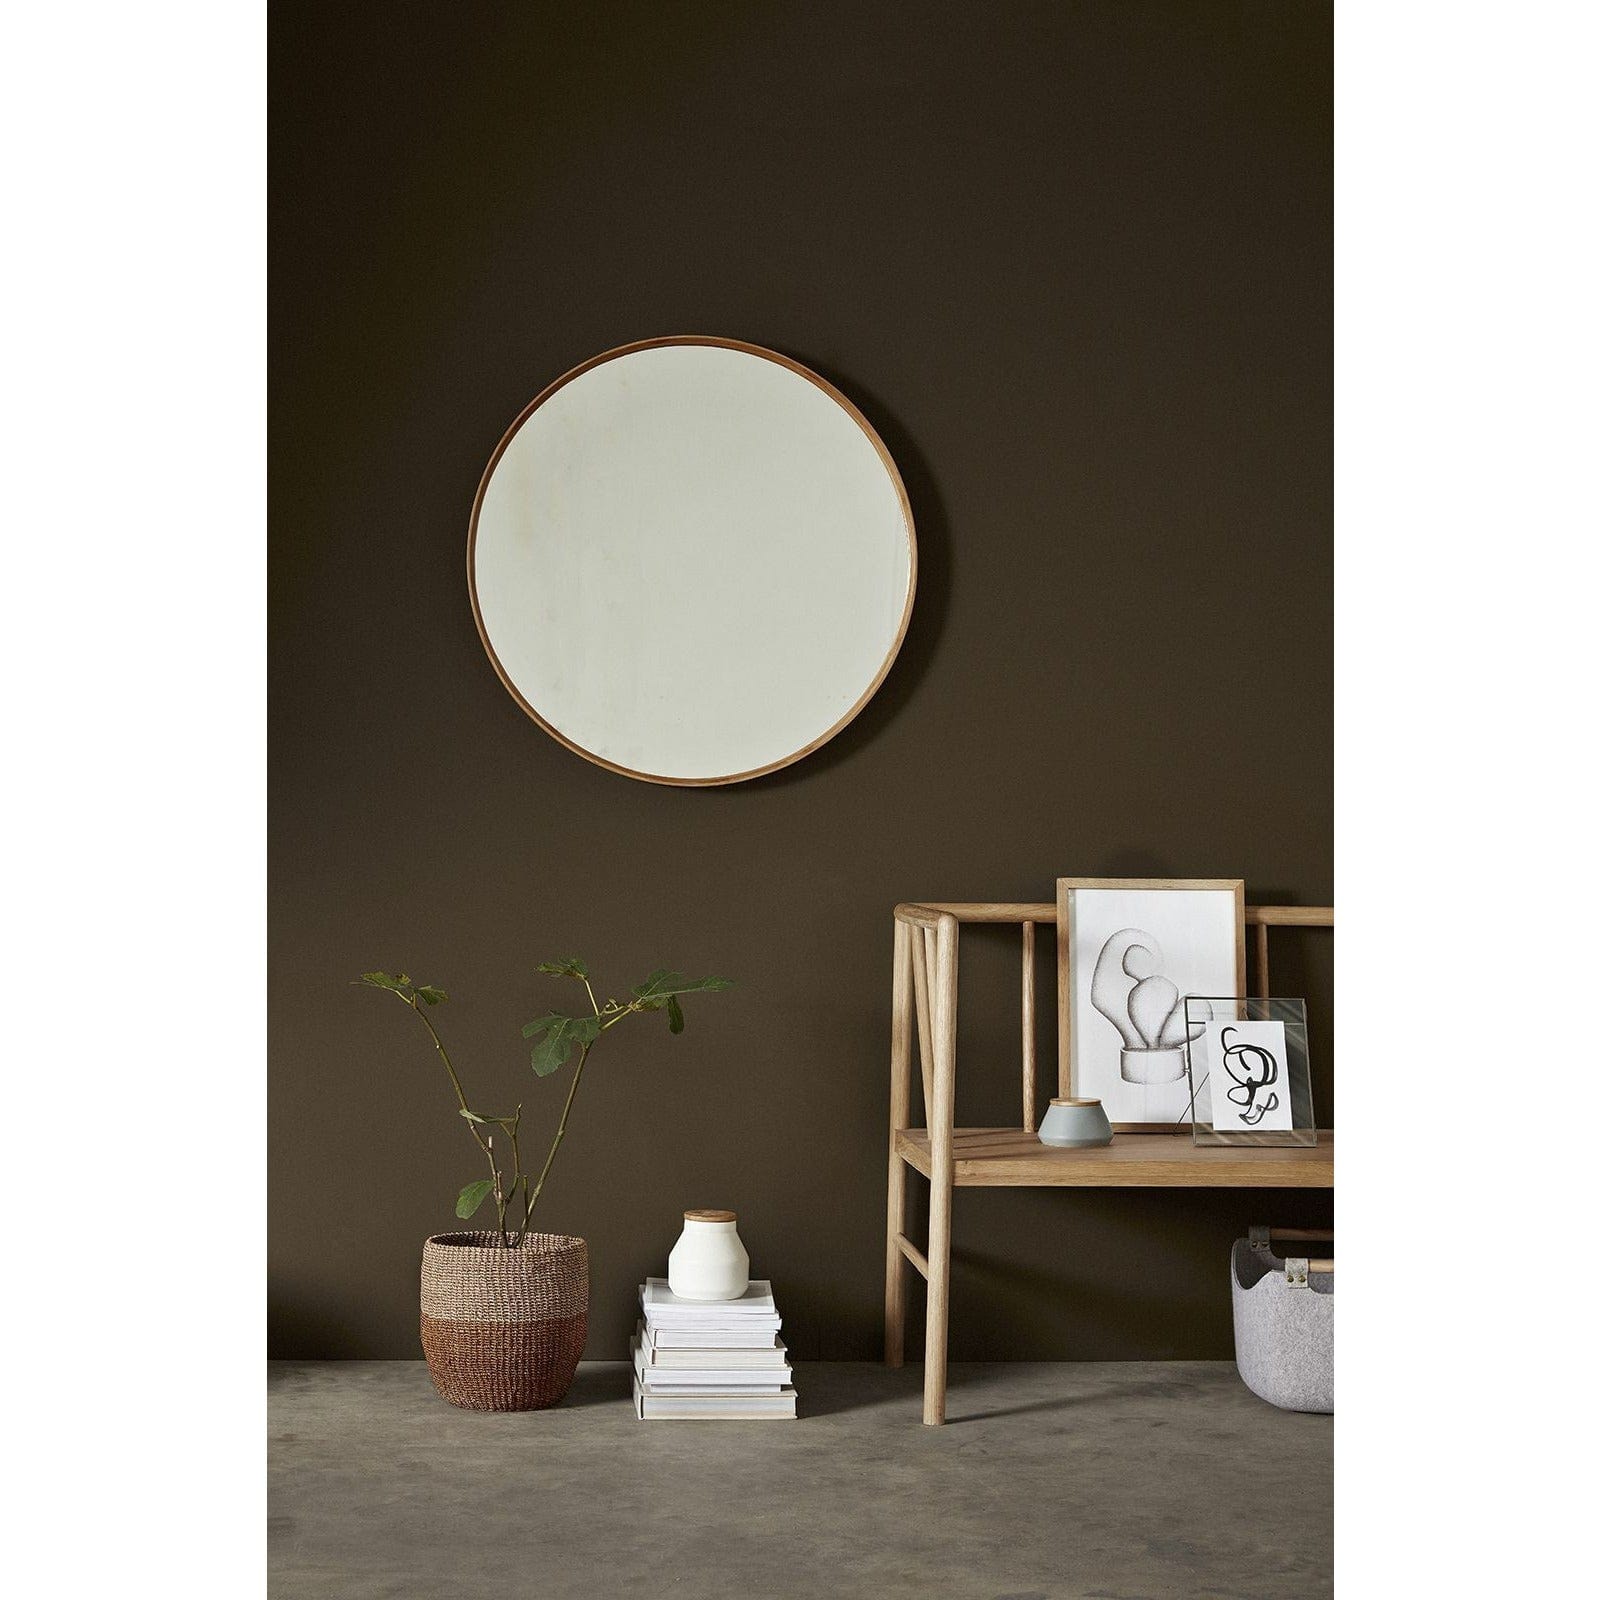 Hübsch Refléter le miroir mural m / cadre en bois naturel